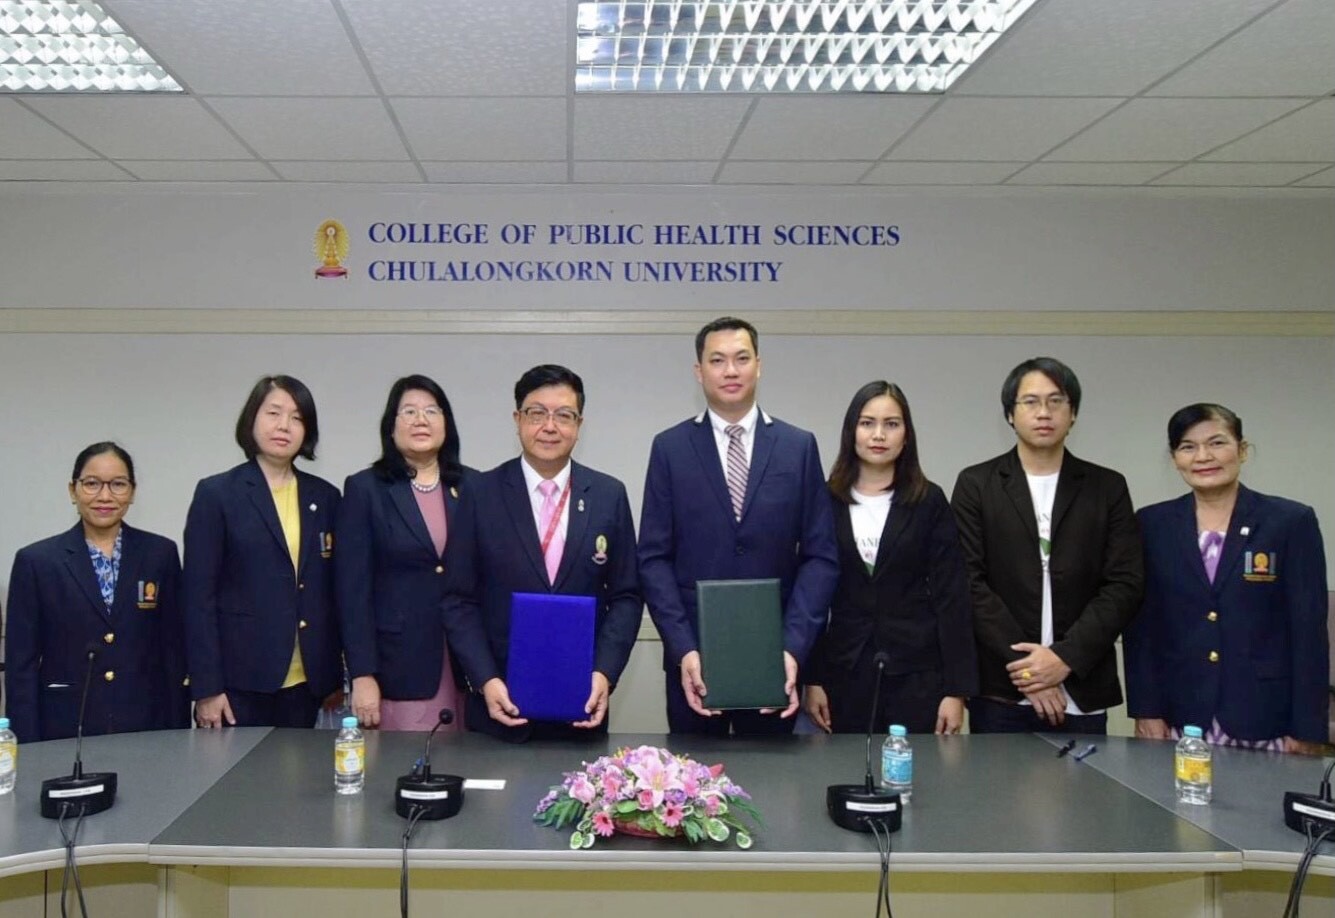 จุฬาลงกรณ์มหาวิทยาลัย ลงนาม MOU พัฒนากัญชง กัญชา เพื่อใช้ประโยชน์ทางการแพทย์และสุขภาพ ร่วมมือกับ บริษัท ซิดนีย์ คอร์ปอเรชั่น (ประเทศไทย) จำกัด